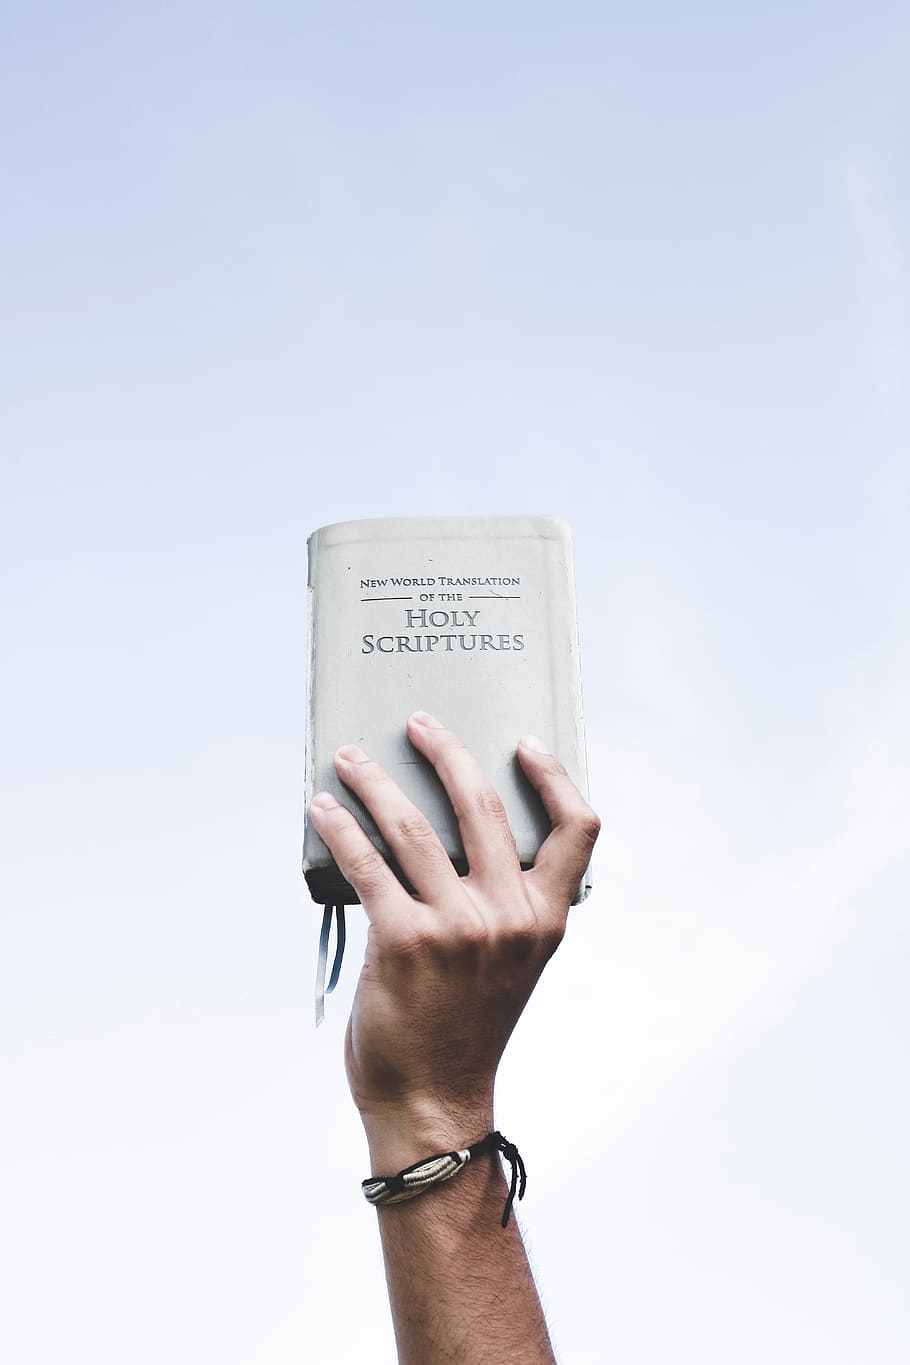 suci, buku, Alkitab, tulisan suci, membaca, tangan, tangan manusia, bagian tubuh manusia, satu orang, teks